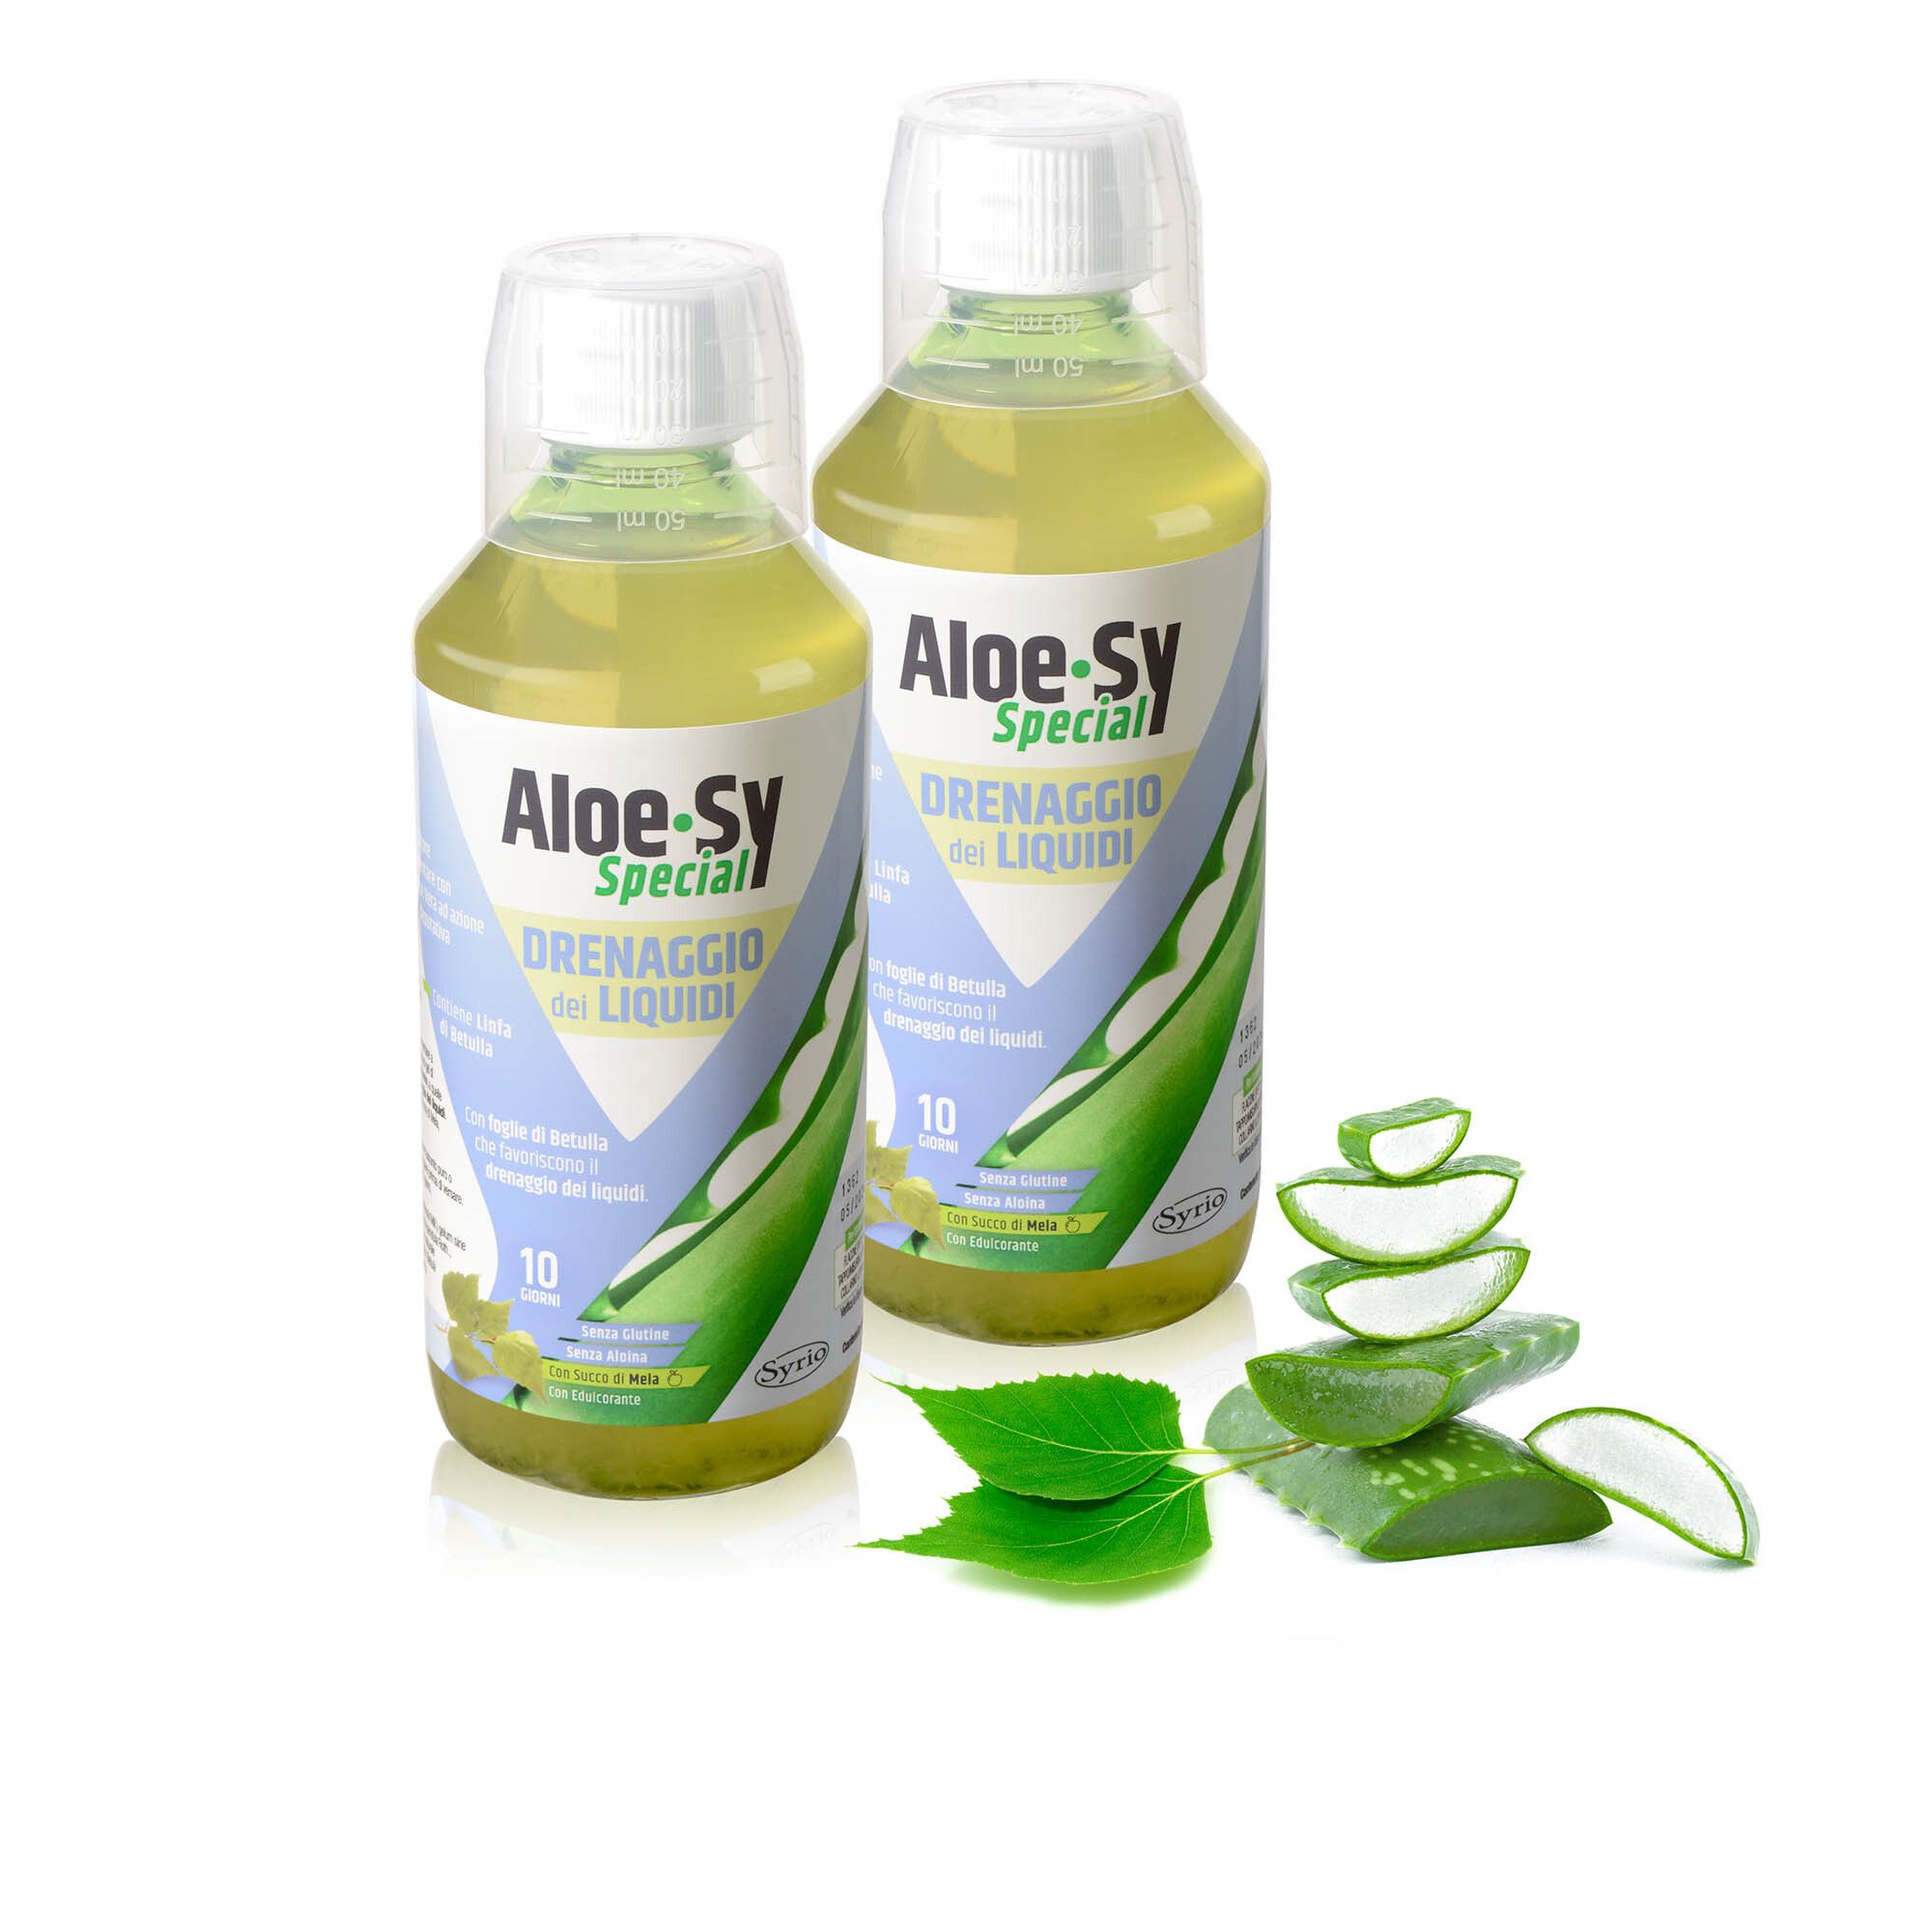 Aloe-Sy Special drenaggio liquidi, integratore (2 pz)